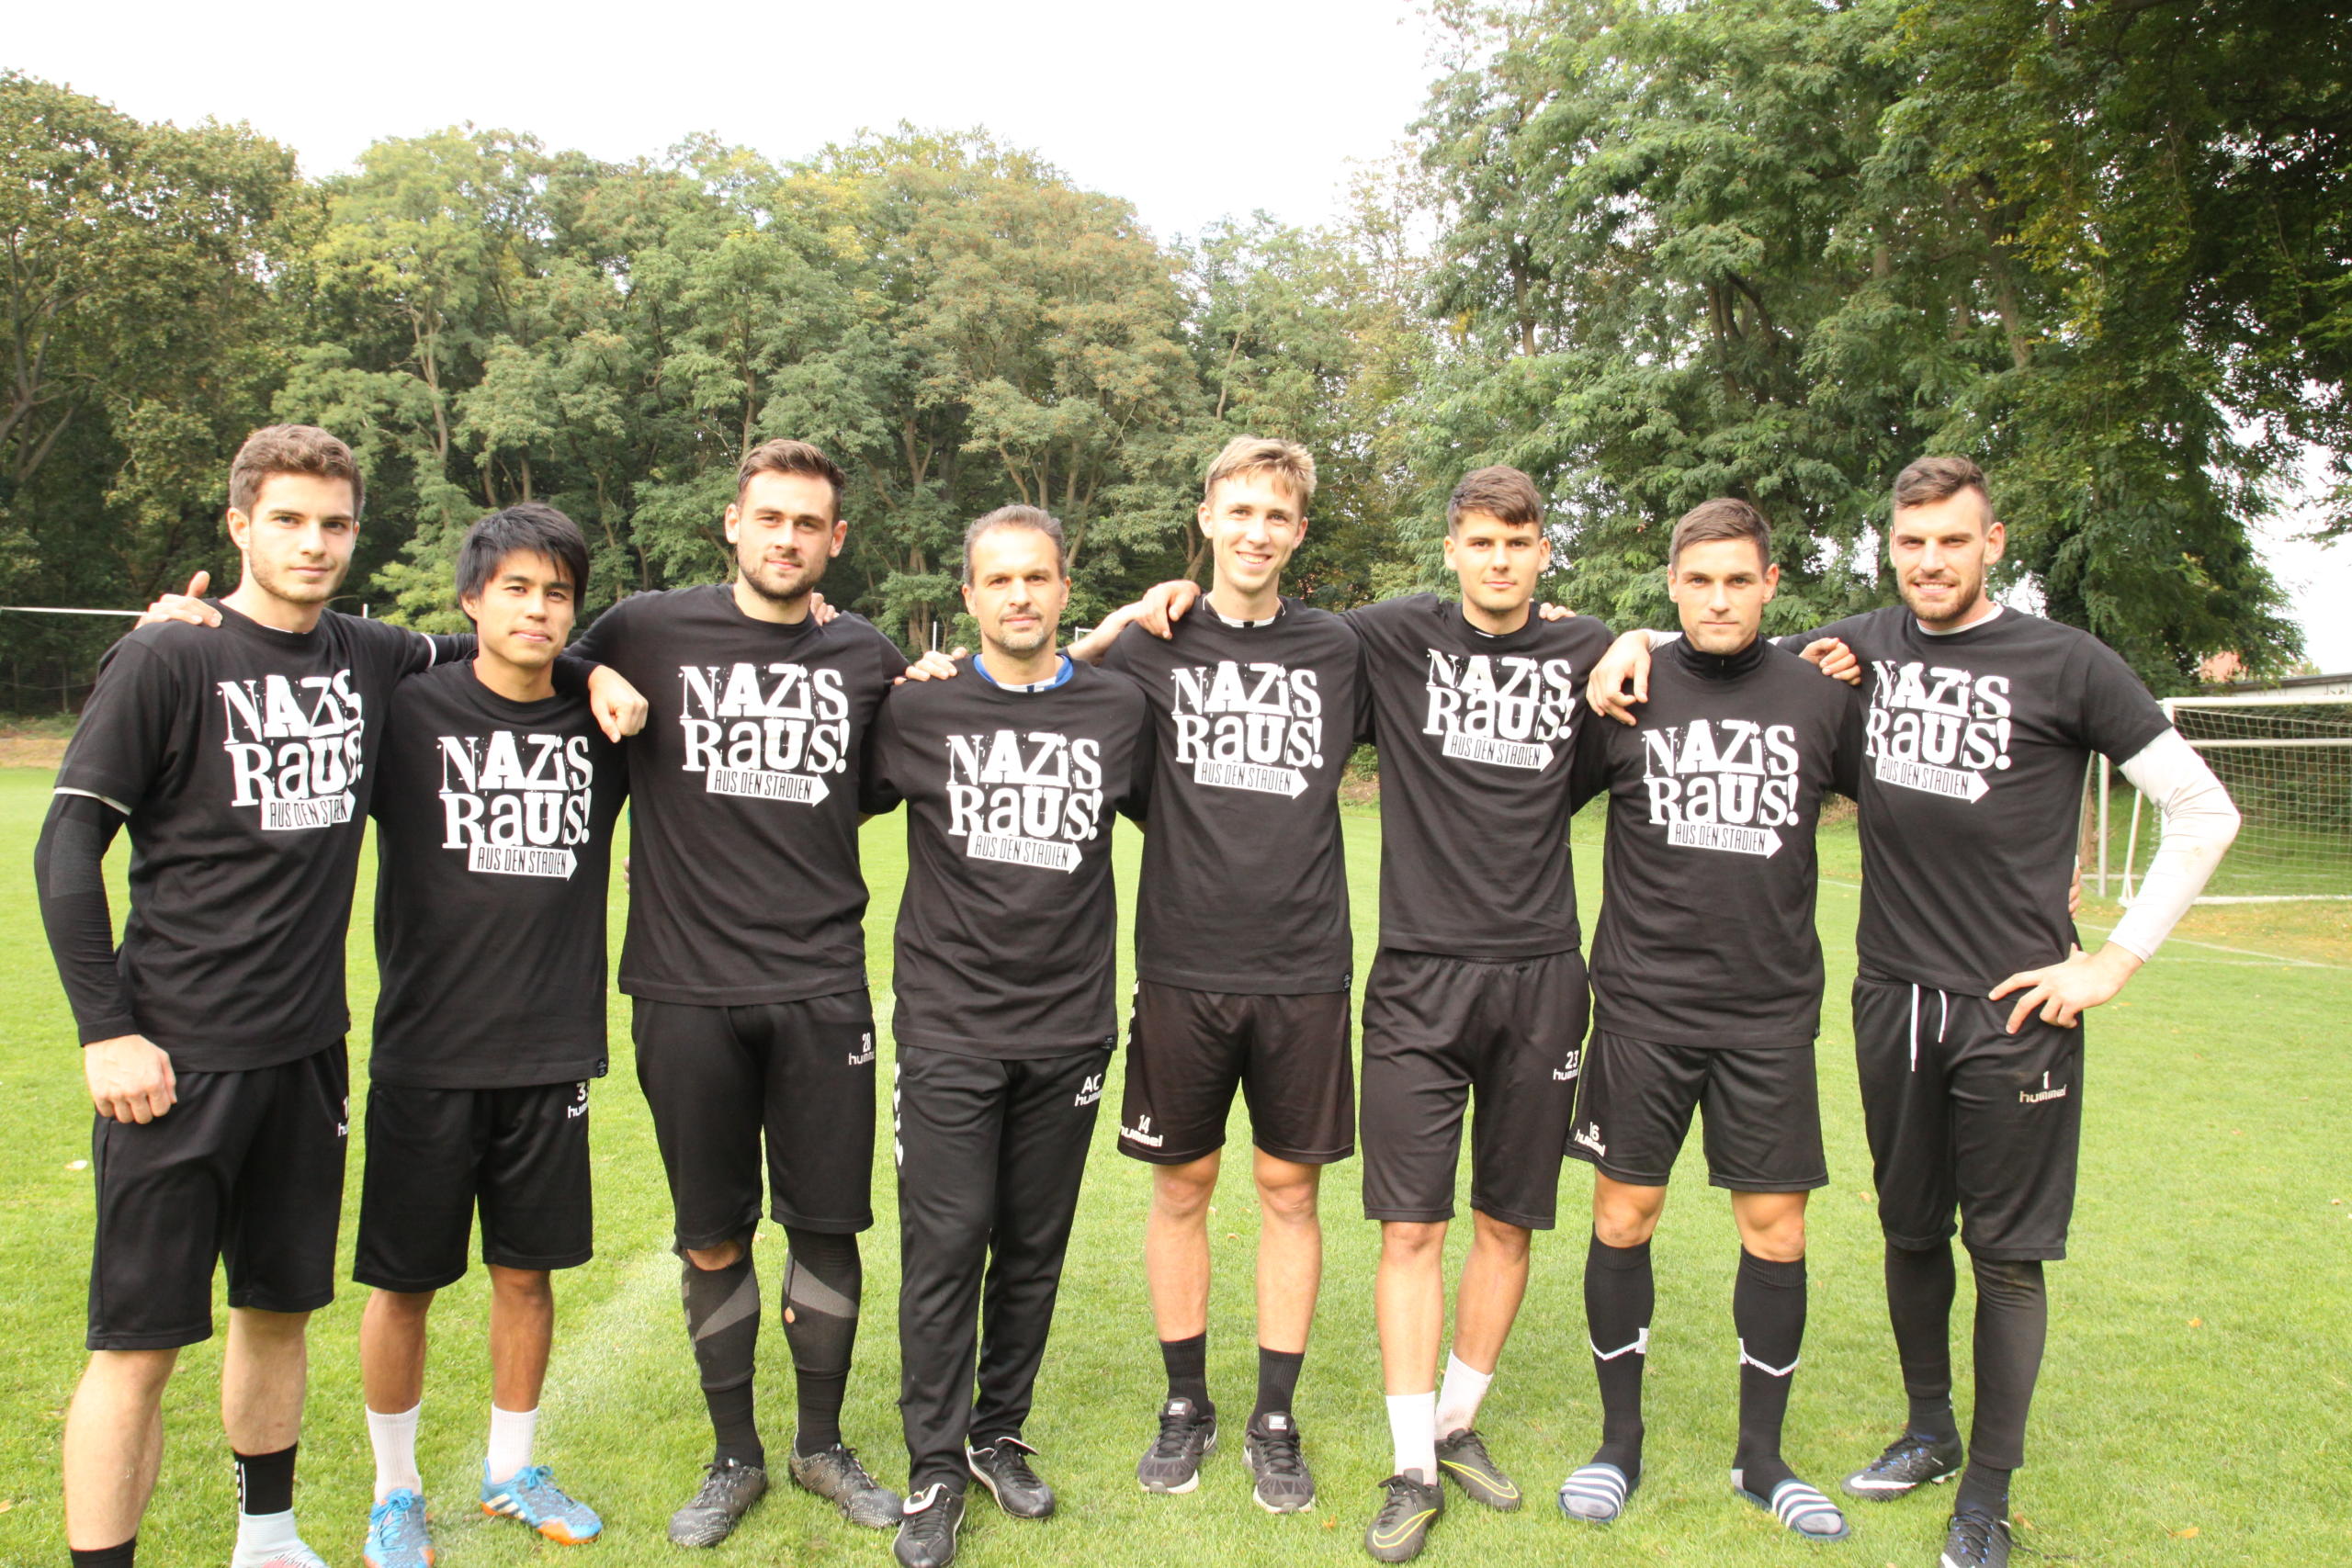 Acht sportlich gekleidete Männer stehen Arm in Arm auf einem Fußballfeld. Alle tragen ein schwarzes T-Shirt mit dem "Nazis raus aus den Stadien"-Logo aufgedruckt.